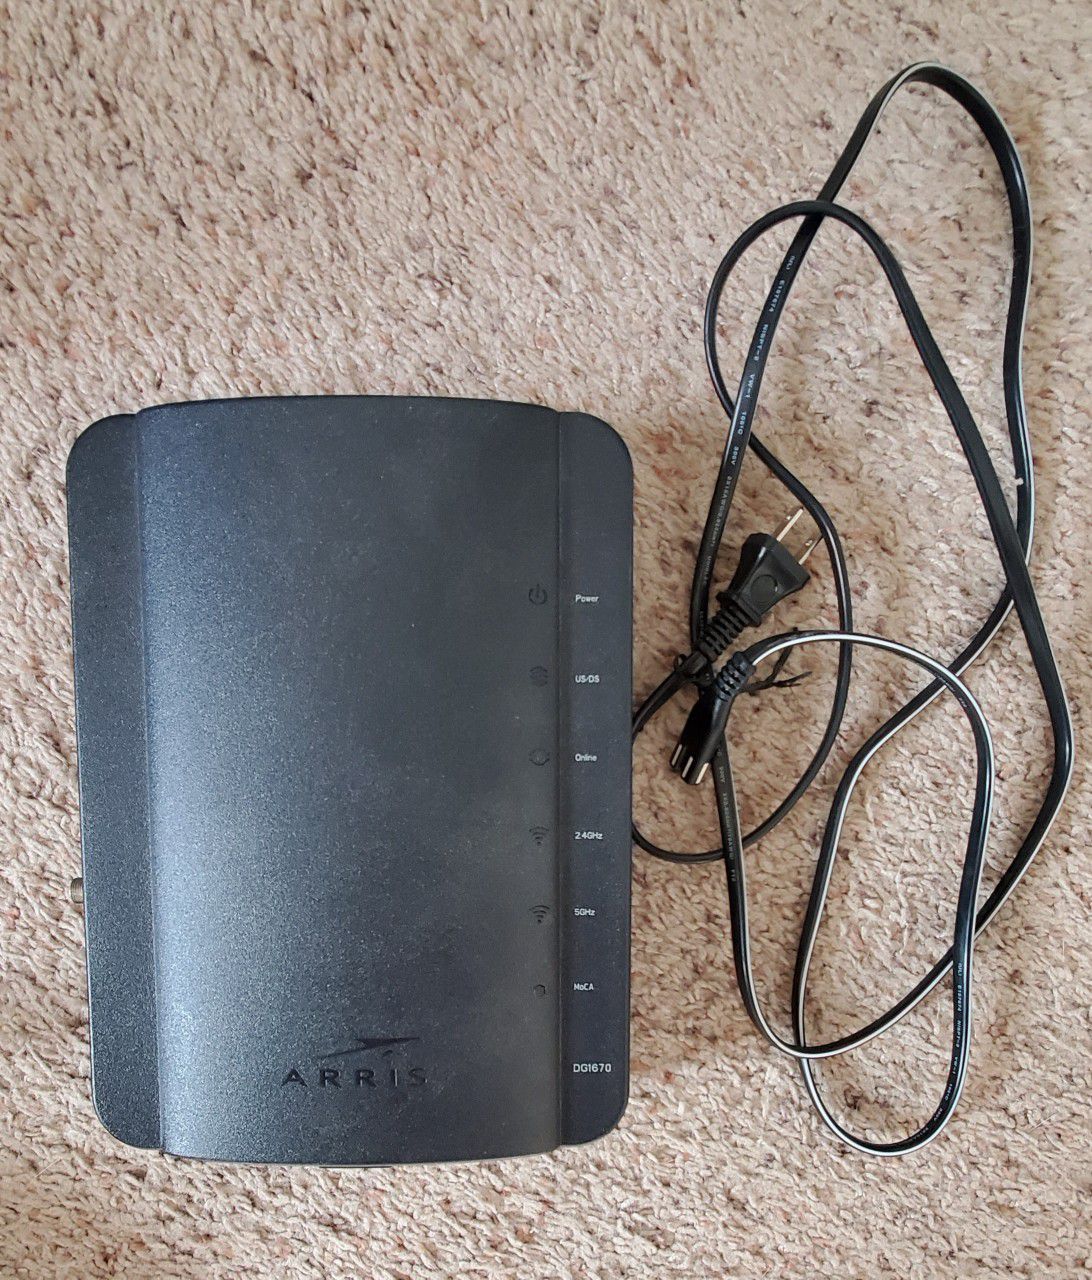 Arris dg1670A modem router